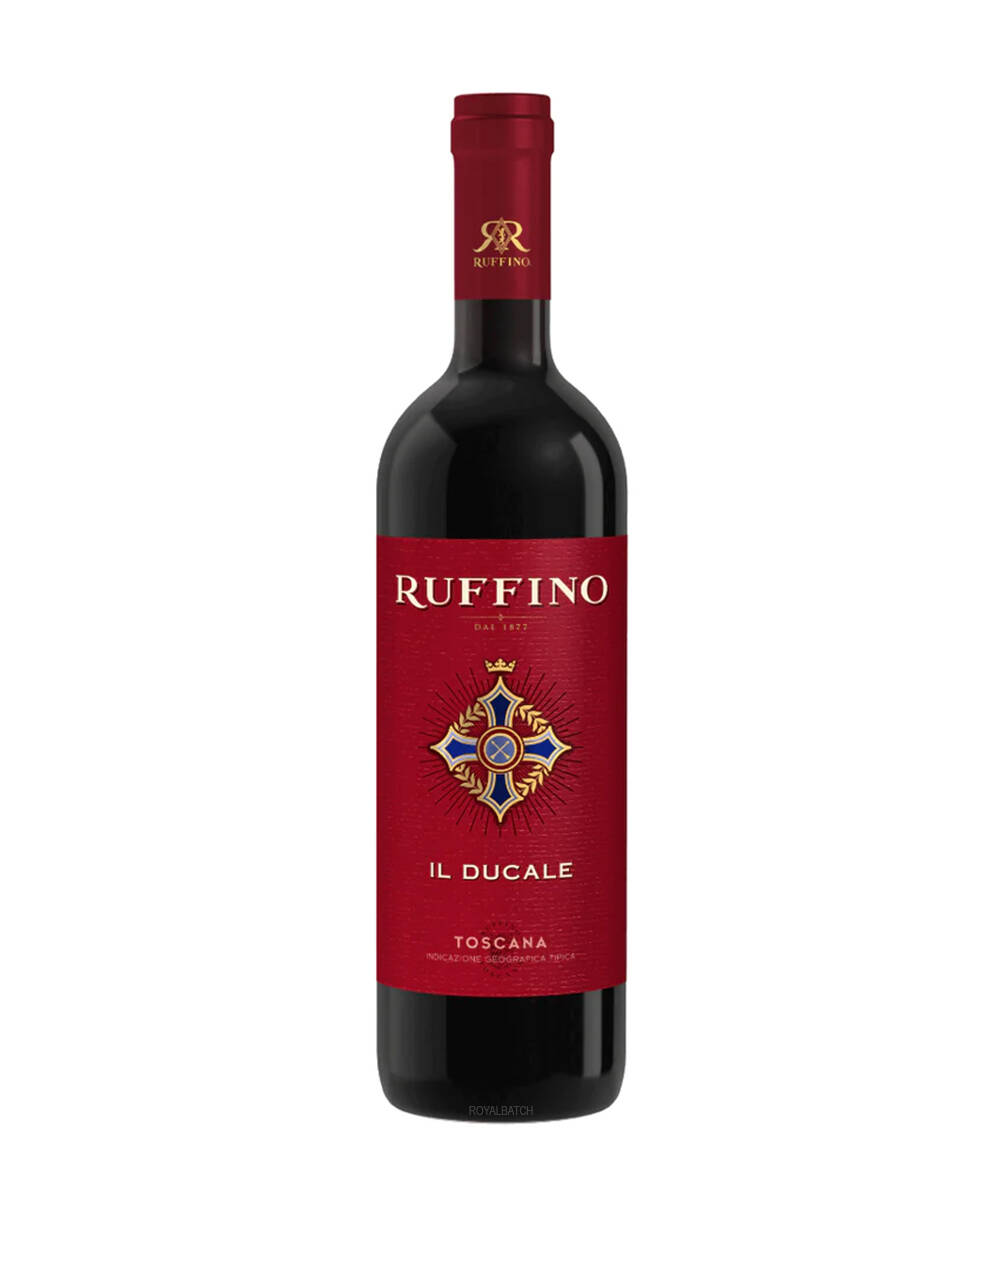 Ruffino Il Ducale Toscana Wine 2019